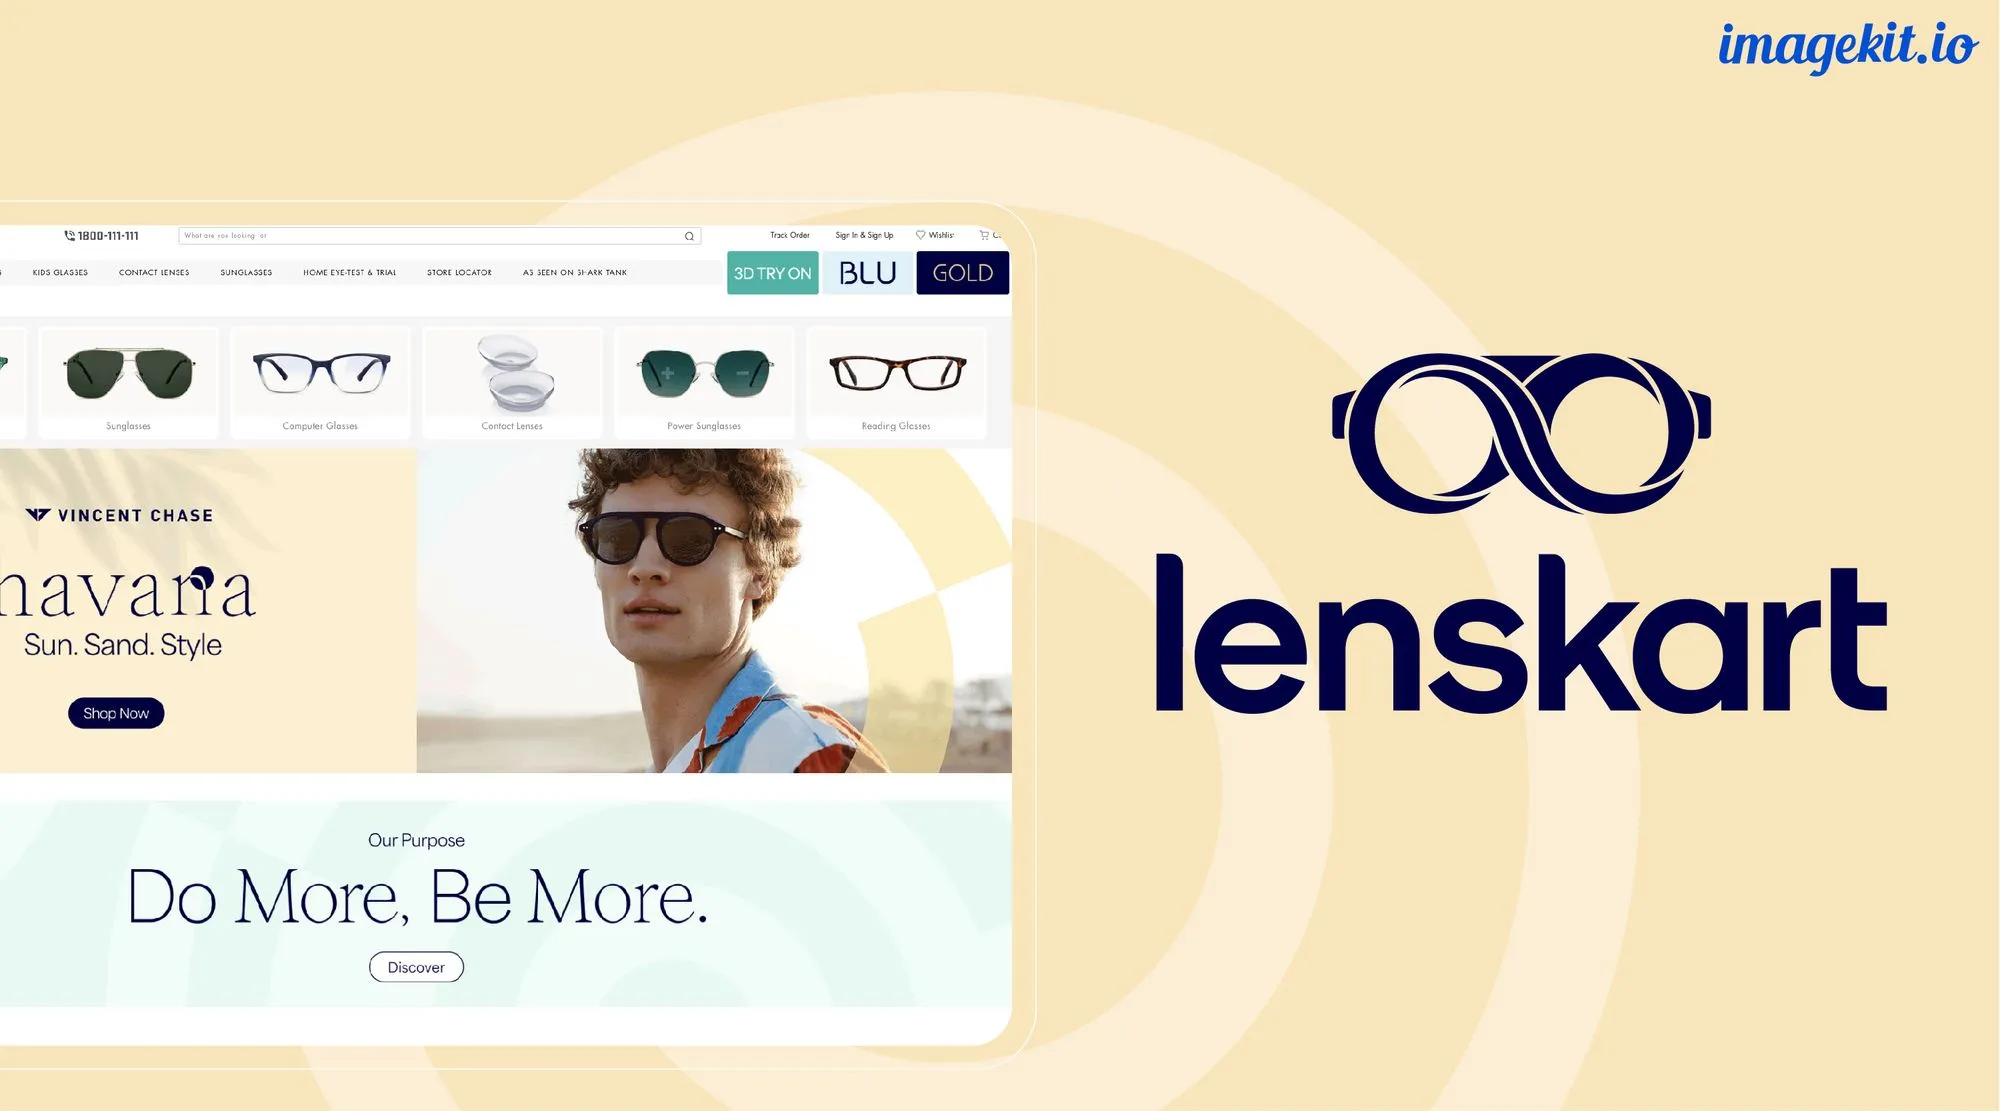 印度DTC眼镜独角兽Lenskart将获1亿美元融资